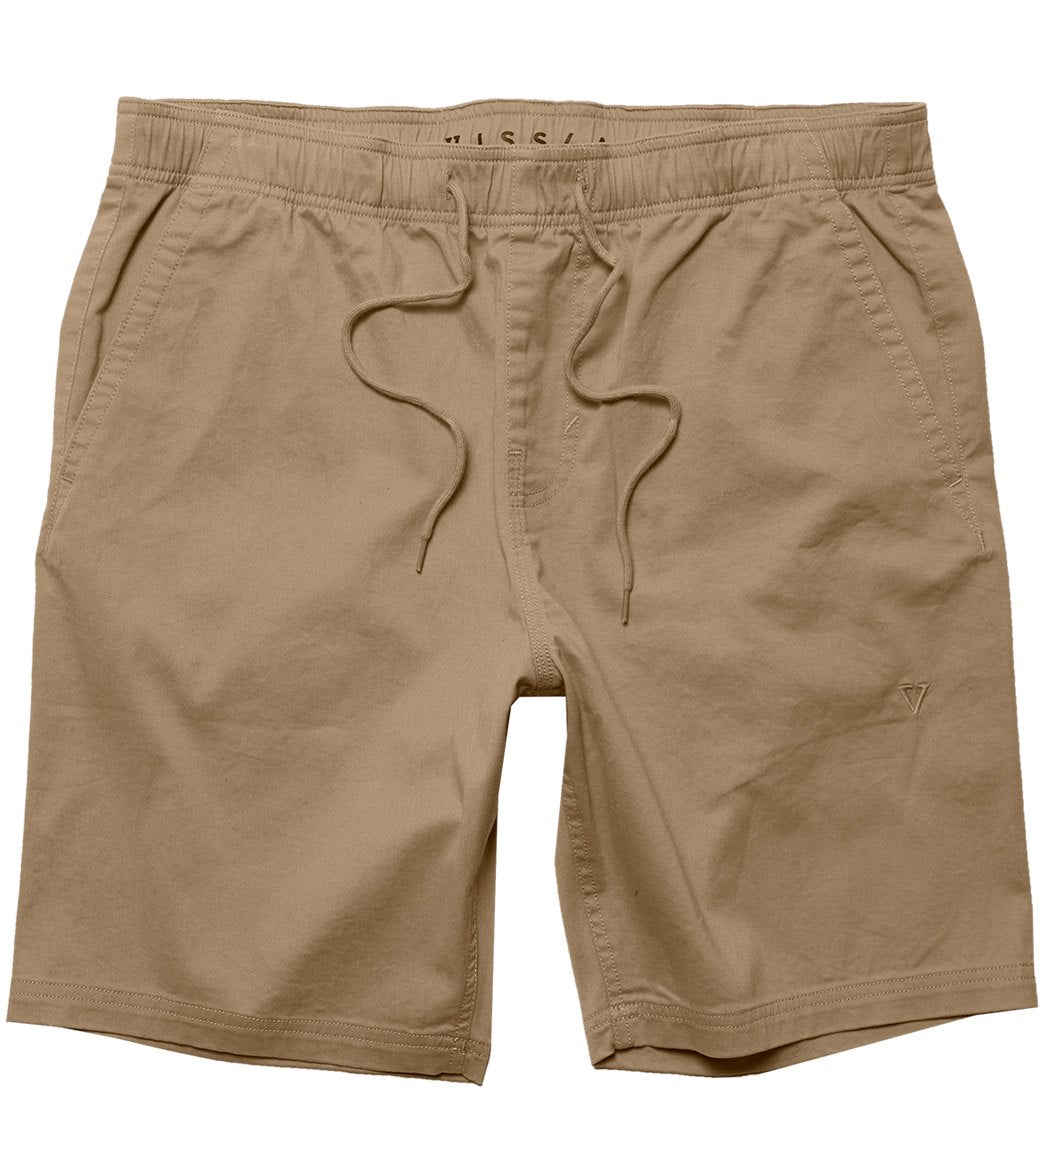 Vissla No See Ums 18.5 Elastic Walkshorts - Khaki Xl Cotton - Swimoutlet.com